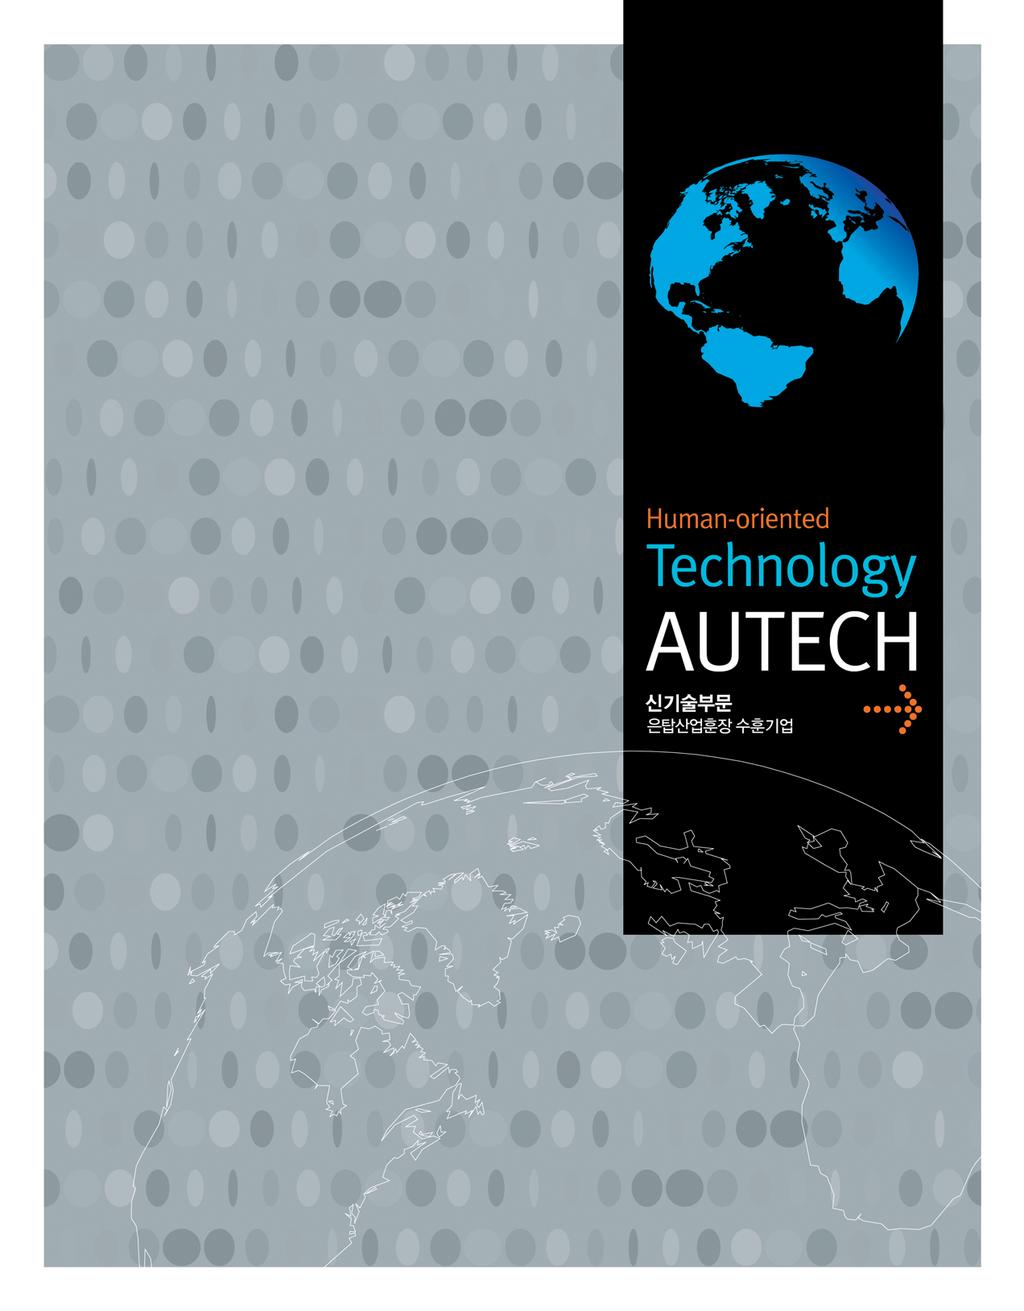 www.autech.co.